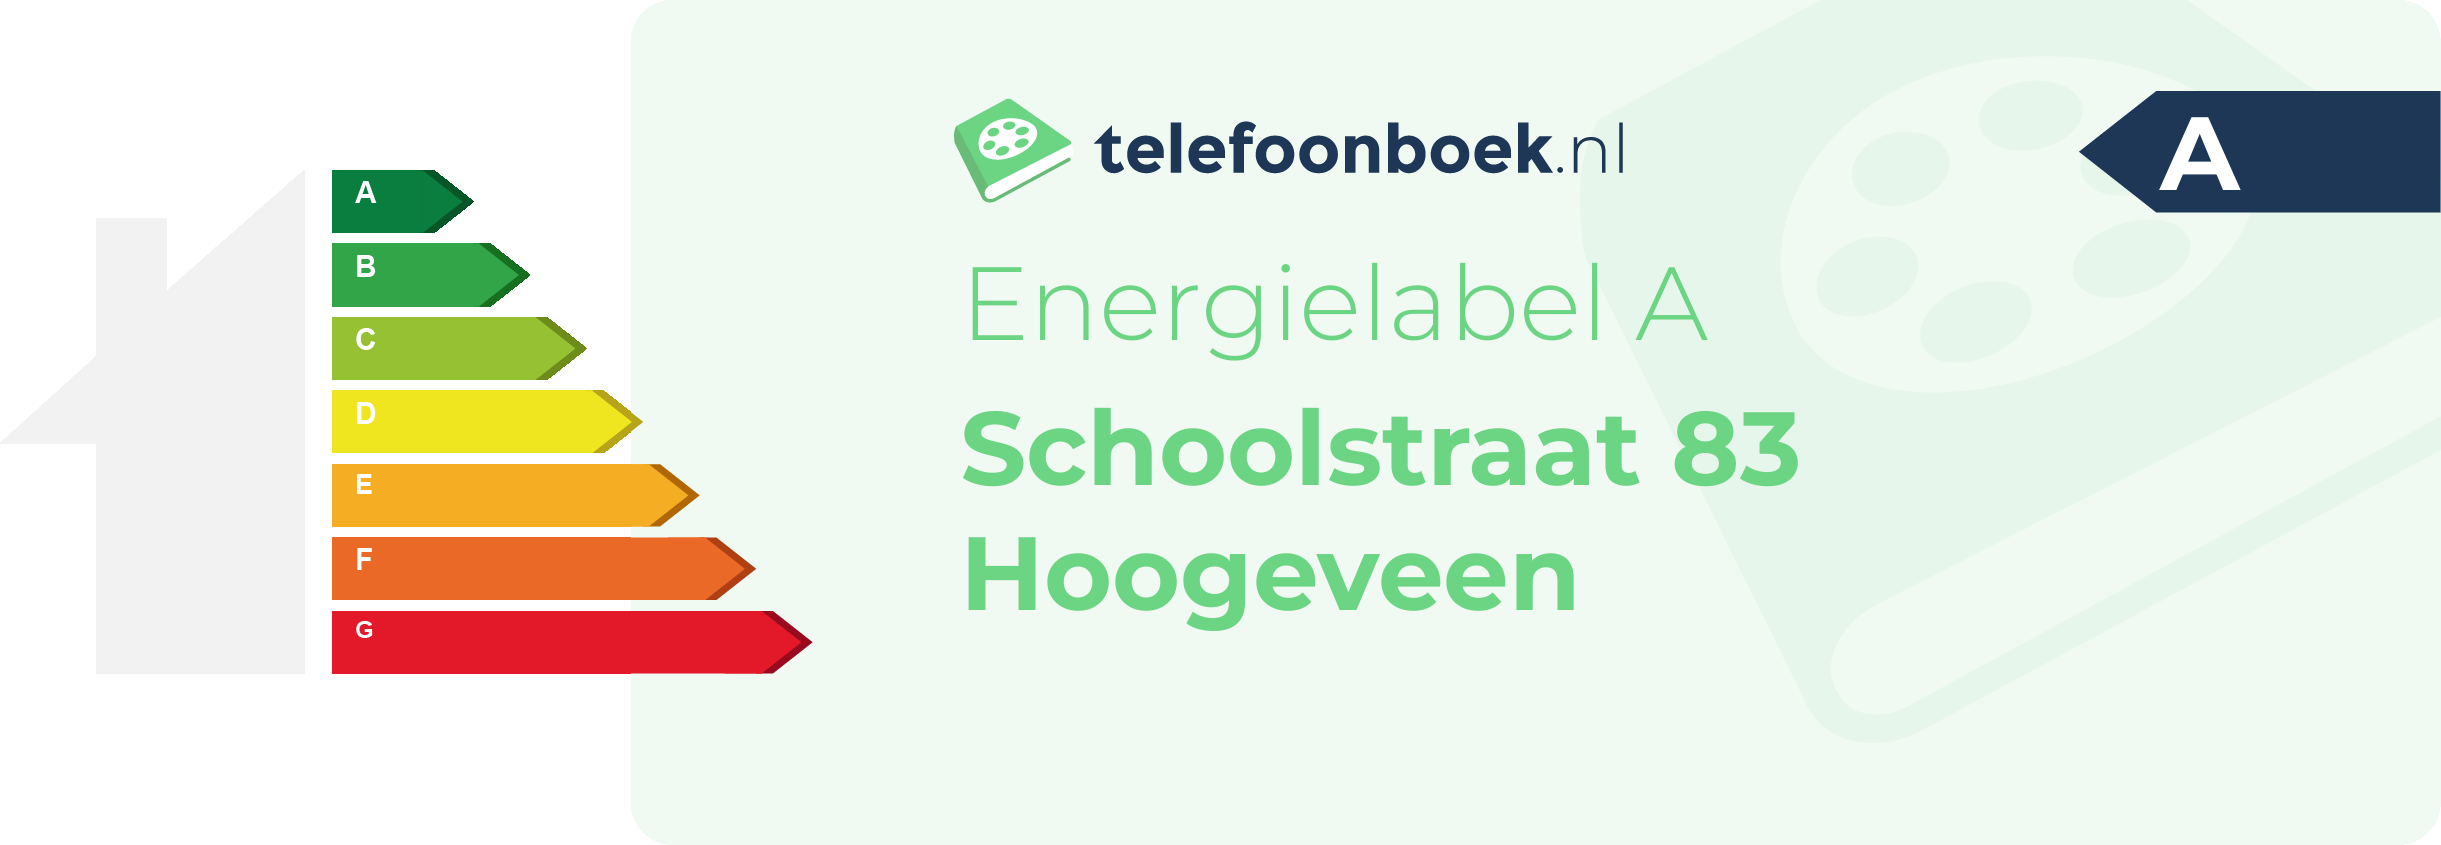 Energielabel Schoolstraat 83 Hoogeveen